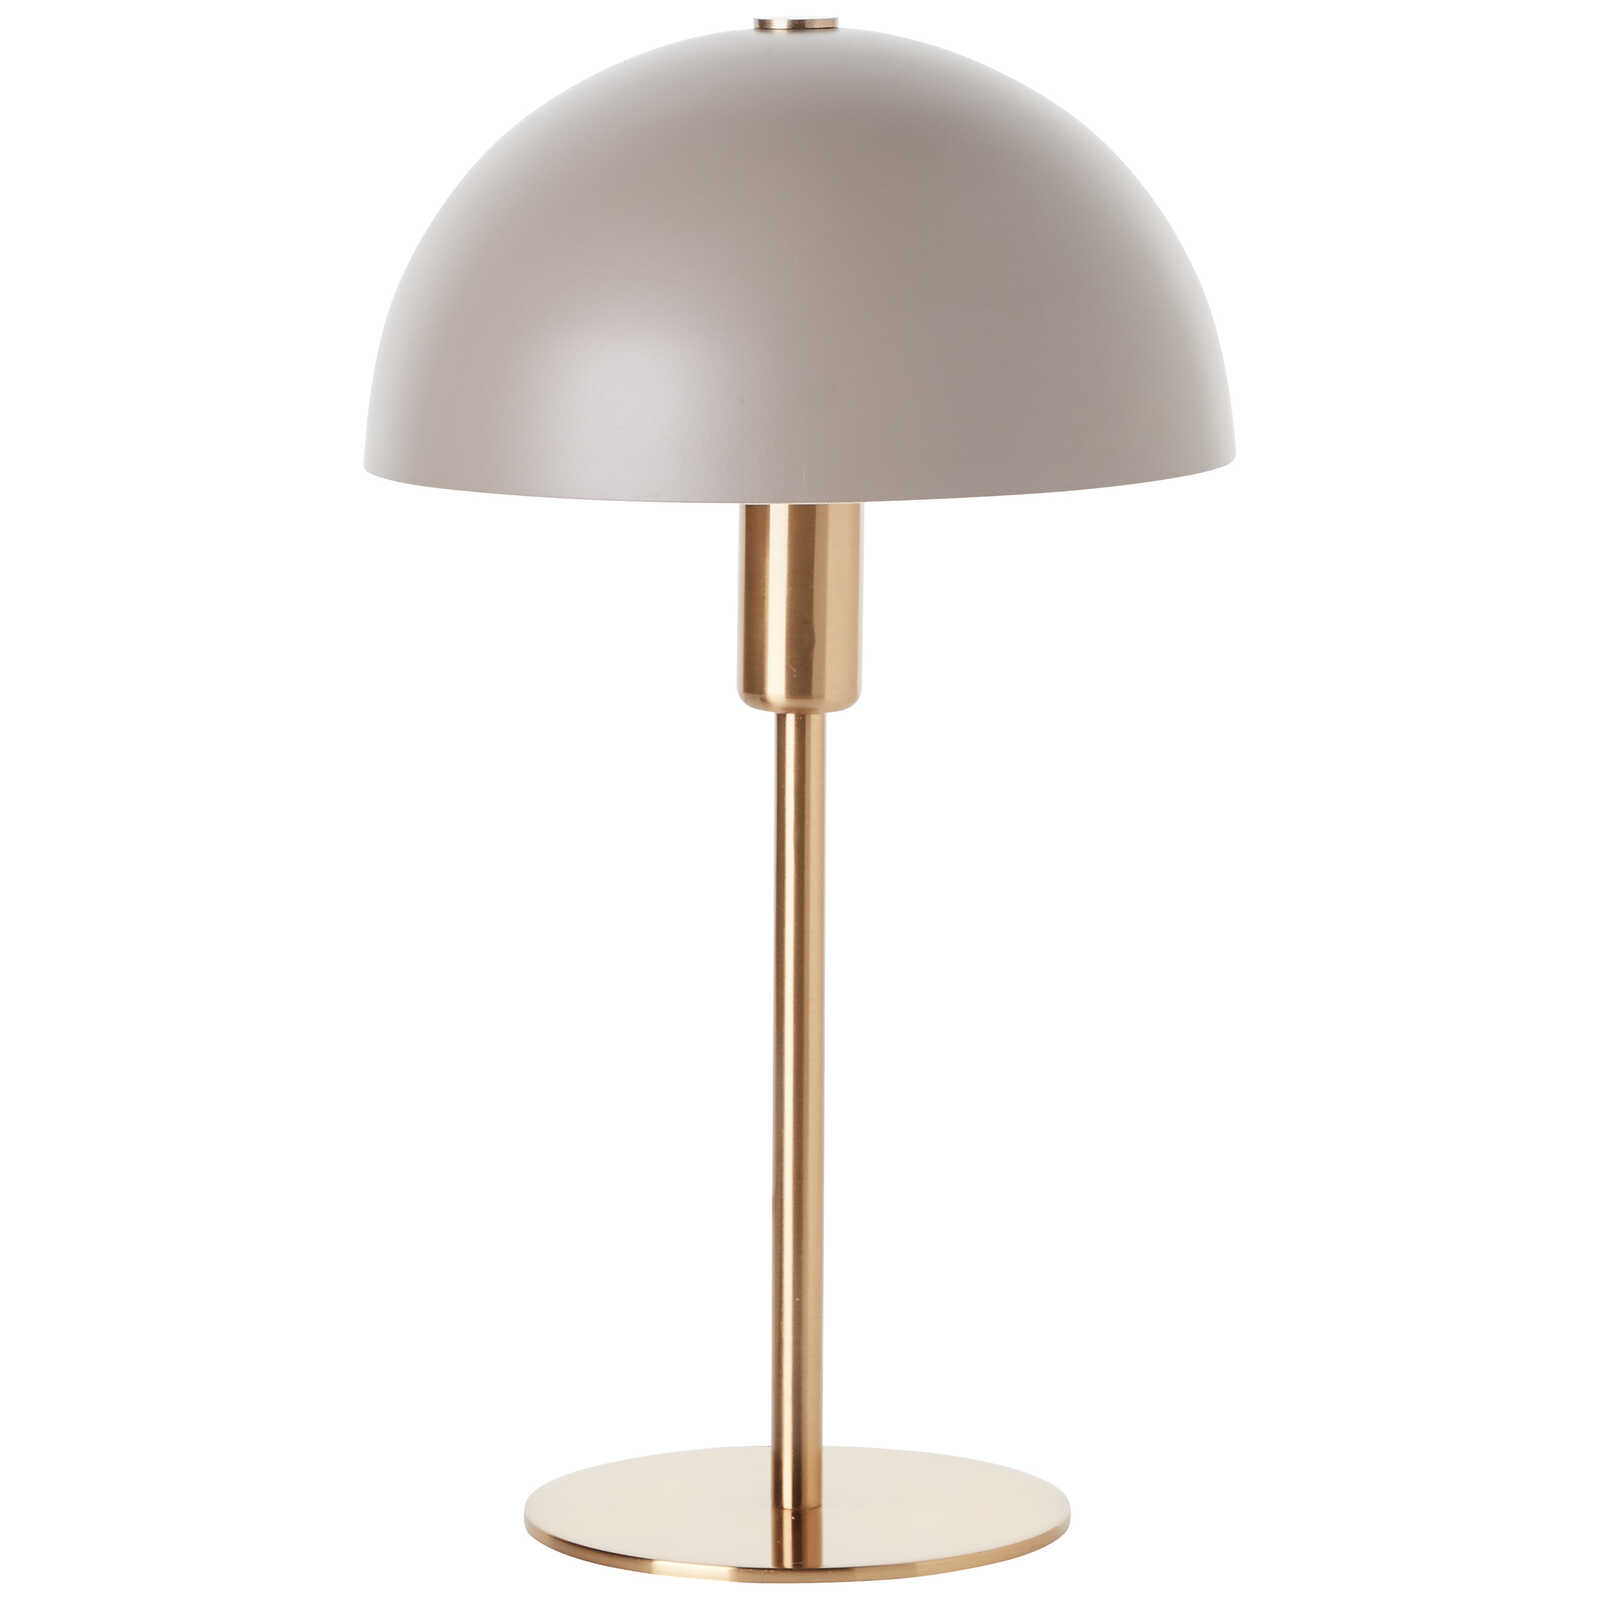             Metal table lamp - Lasse 1 - Gold
        